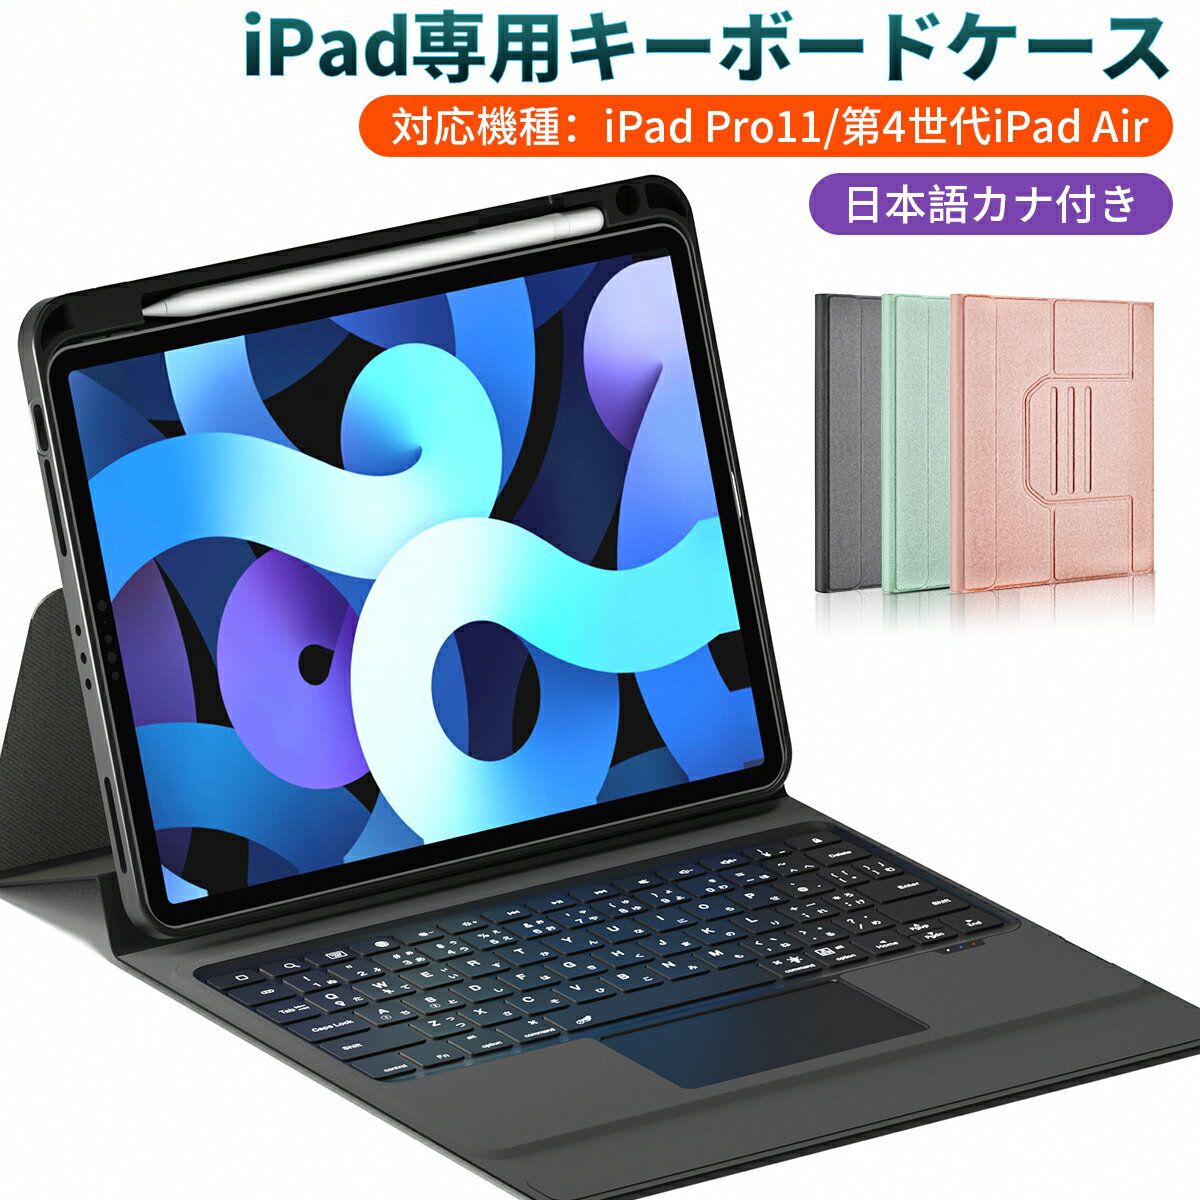 iPad キーボード ケース 第5世代 iPad Air 最新版 最新型 iPad Air 対応 ipad pro ipad キーボード タッチパッド iPad Air4 ケース キーボード 2021　タブレット用　タッチパッド搭載 ワイヤレス キーボード Bluetooth 着脱式 第8世代 iPad Pro 11インチ